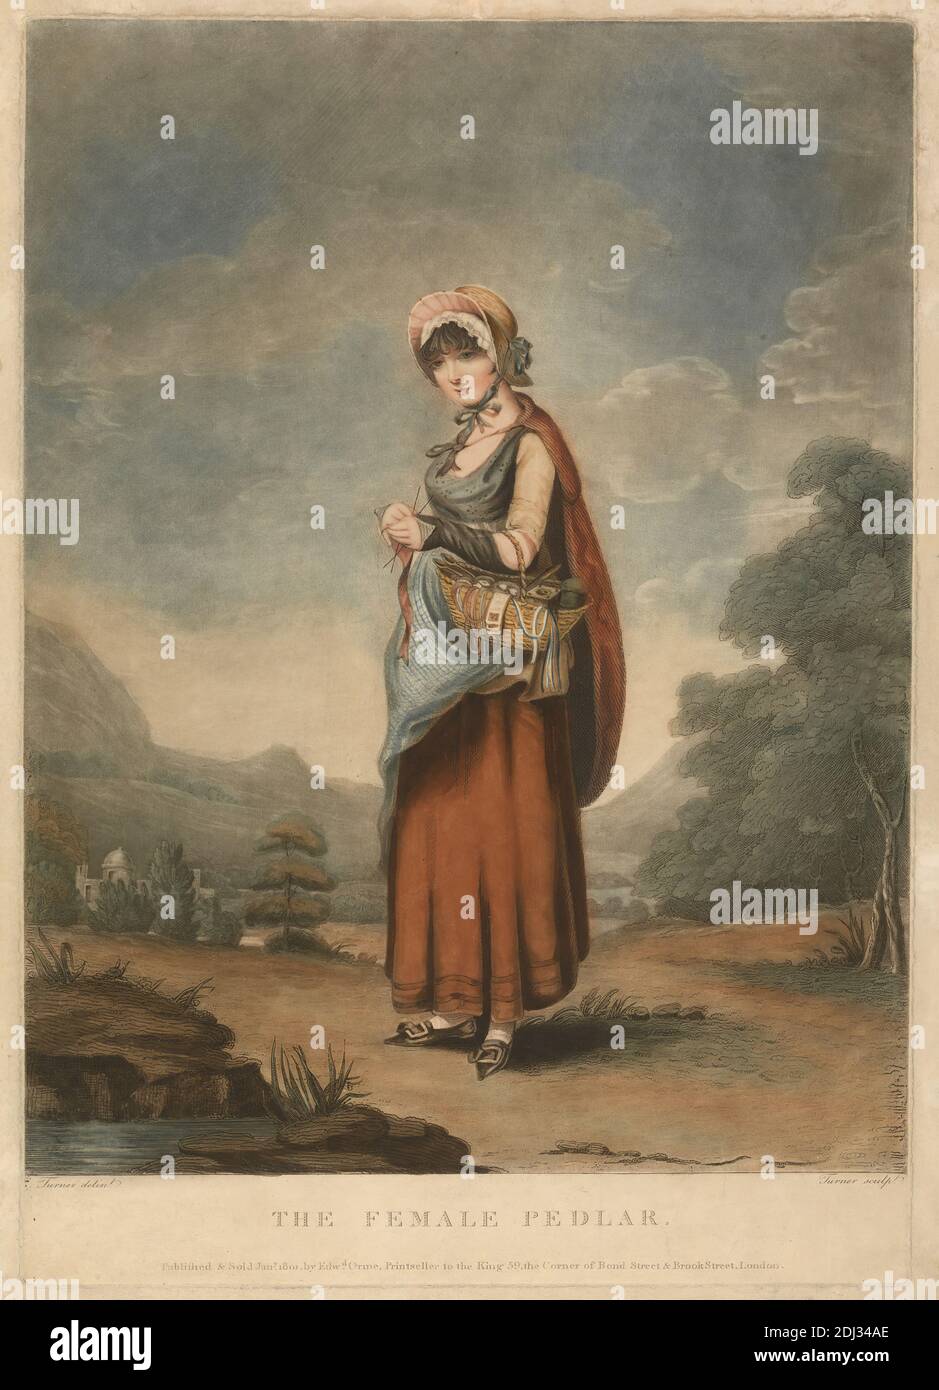 The Female Peddler, Charles Turner, 1774–1857, britisch, nach Charles Turner, 1774–1857, britisch, 1801, Aquatint Stockfoto